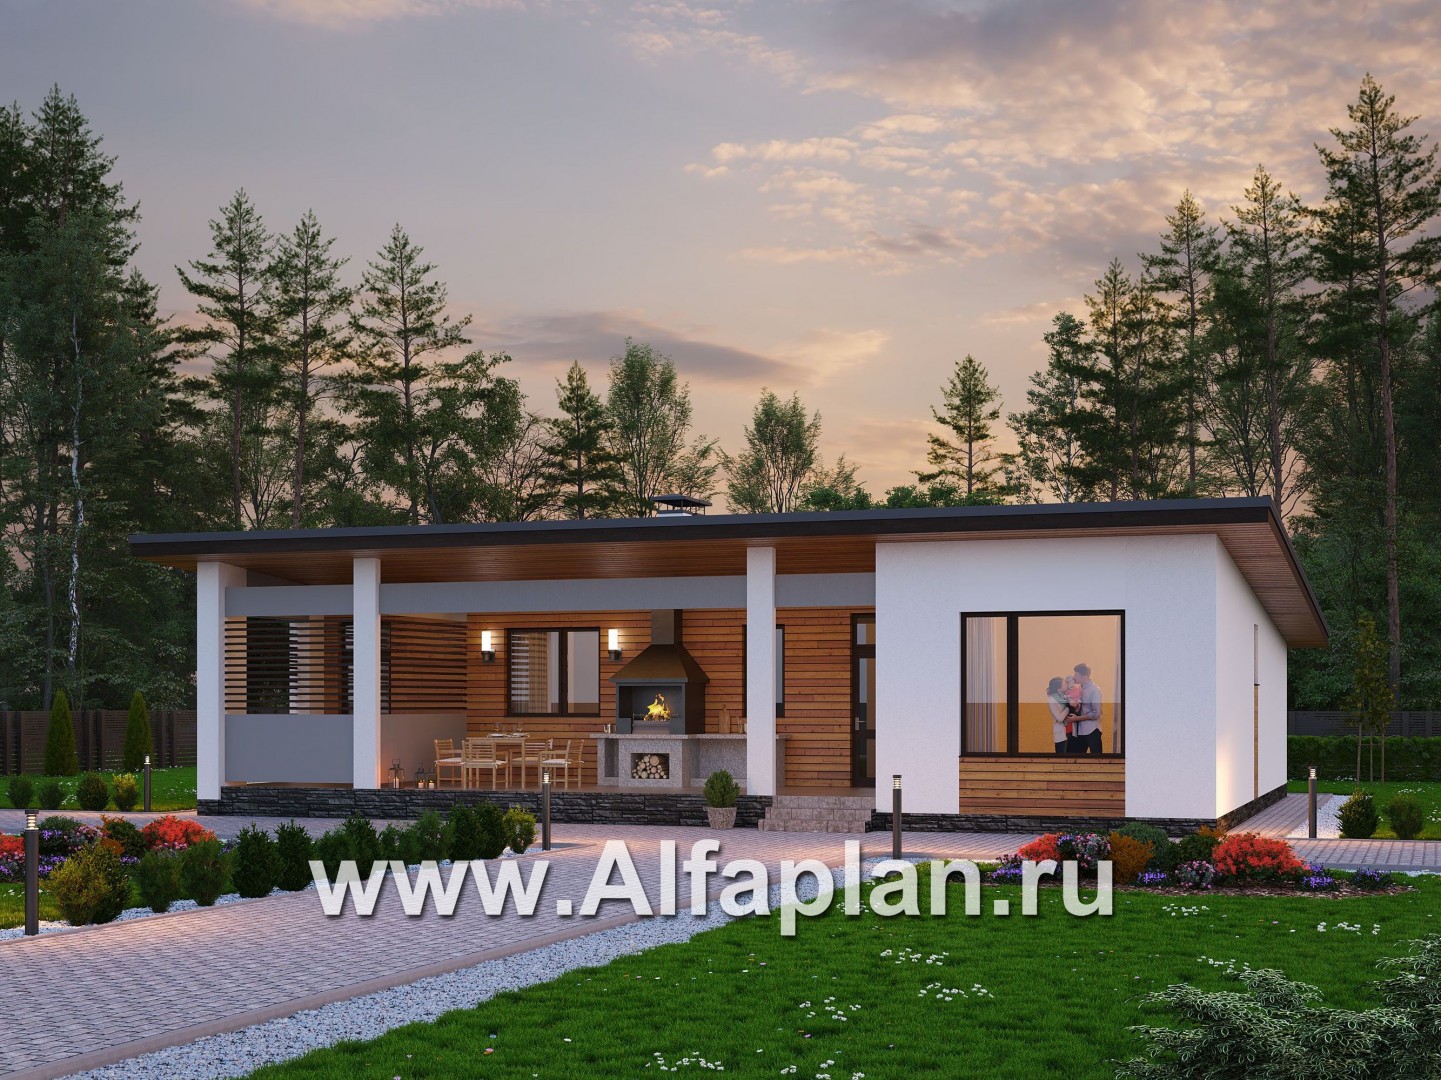 «Эпсилон» - проект одноэтажного дома с сауной, джакузи и барбекью на террасе, в скандинавском стиле - основное изображение